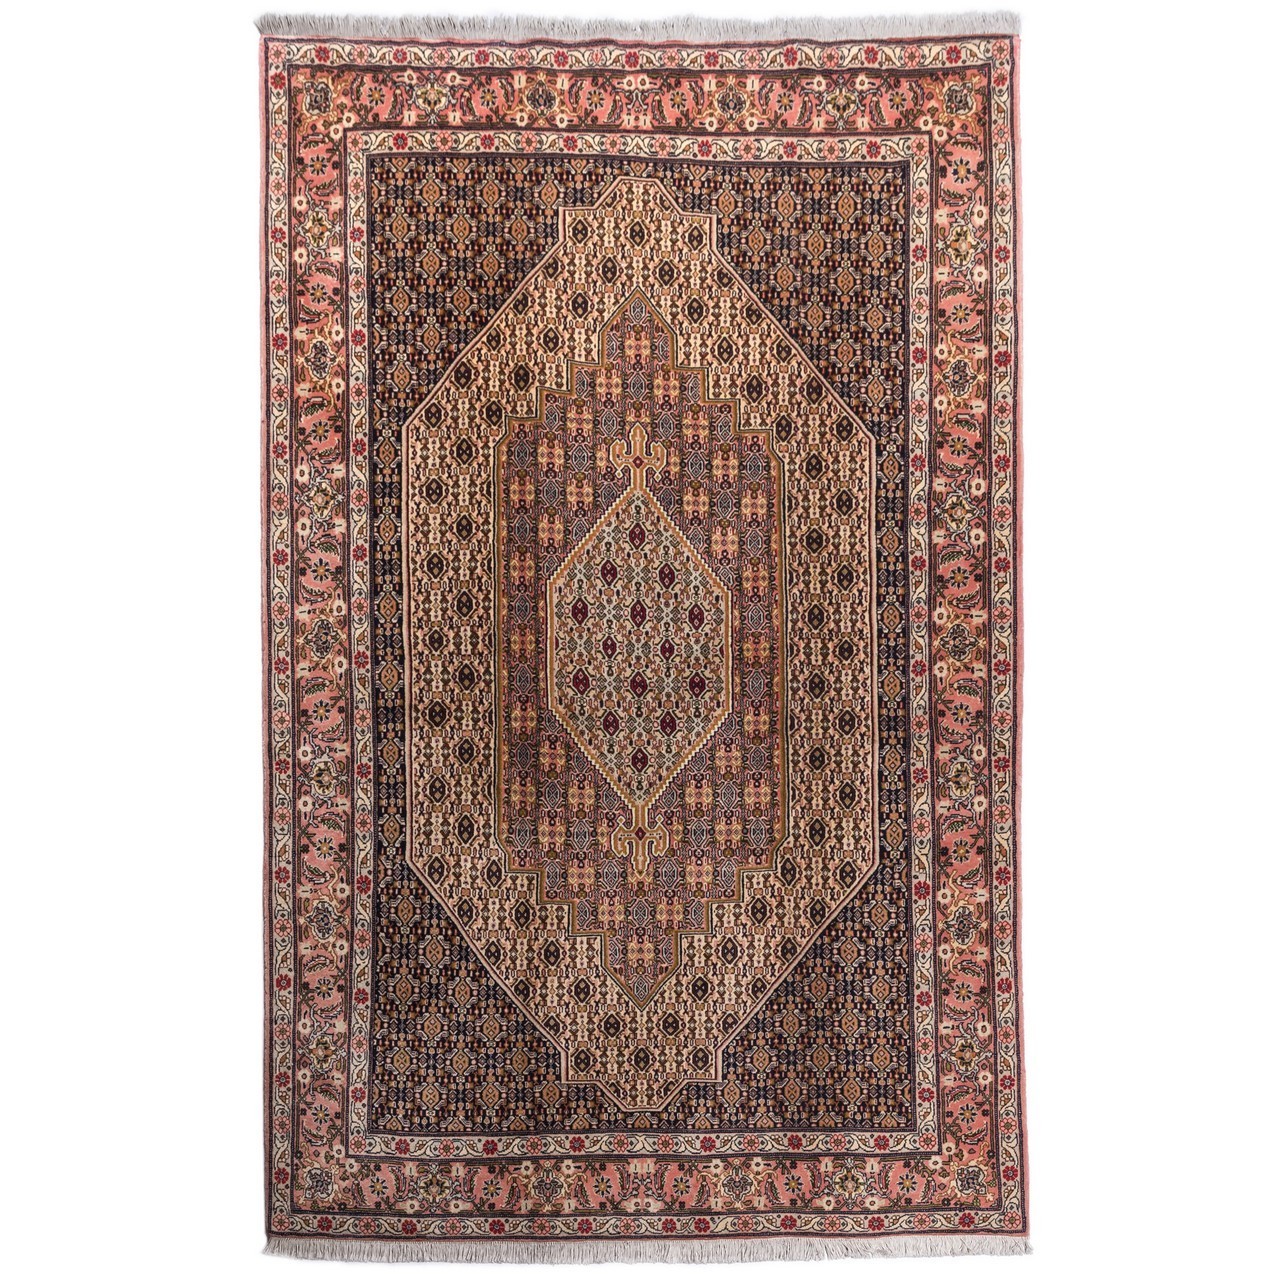 handgeknüpfter persischer Teppich. Ziffer 160016